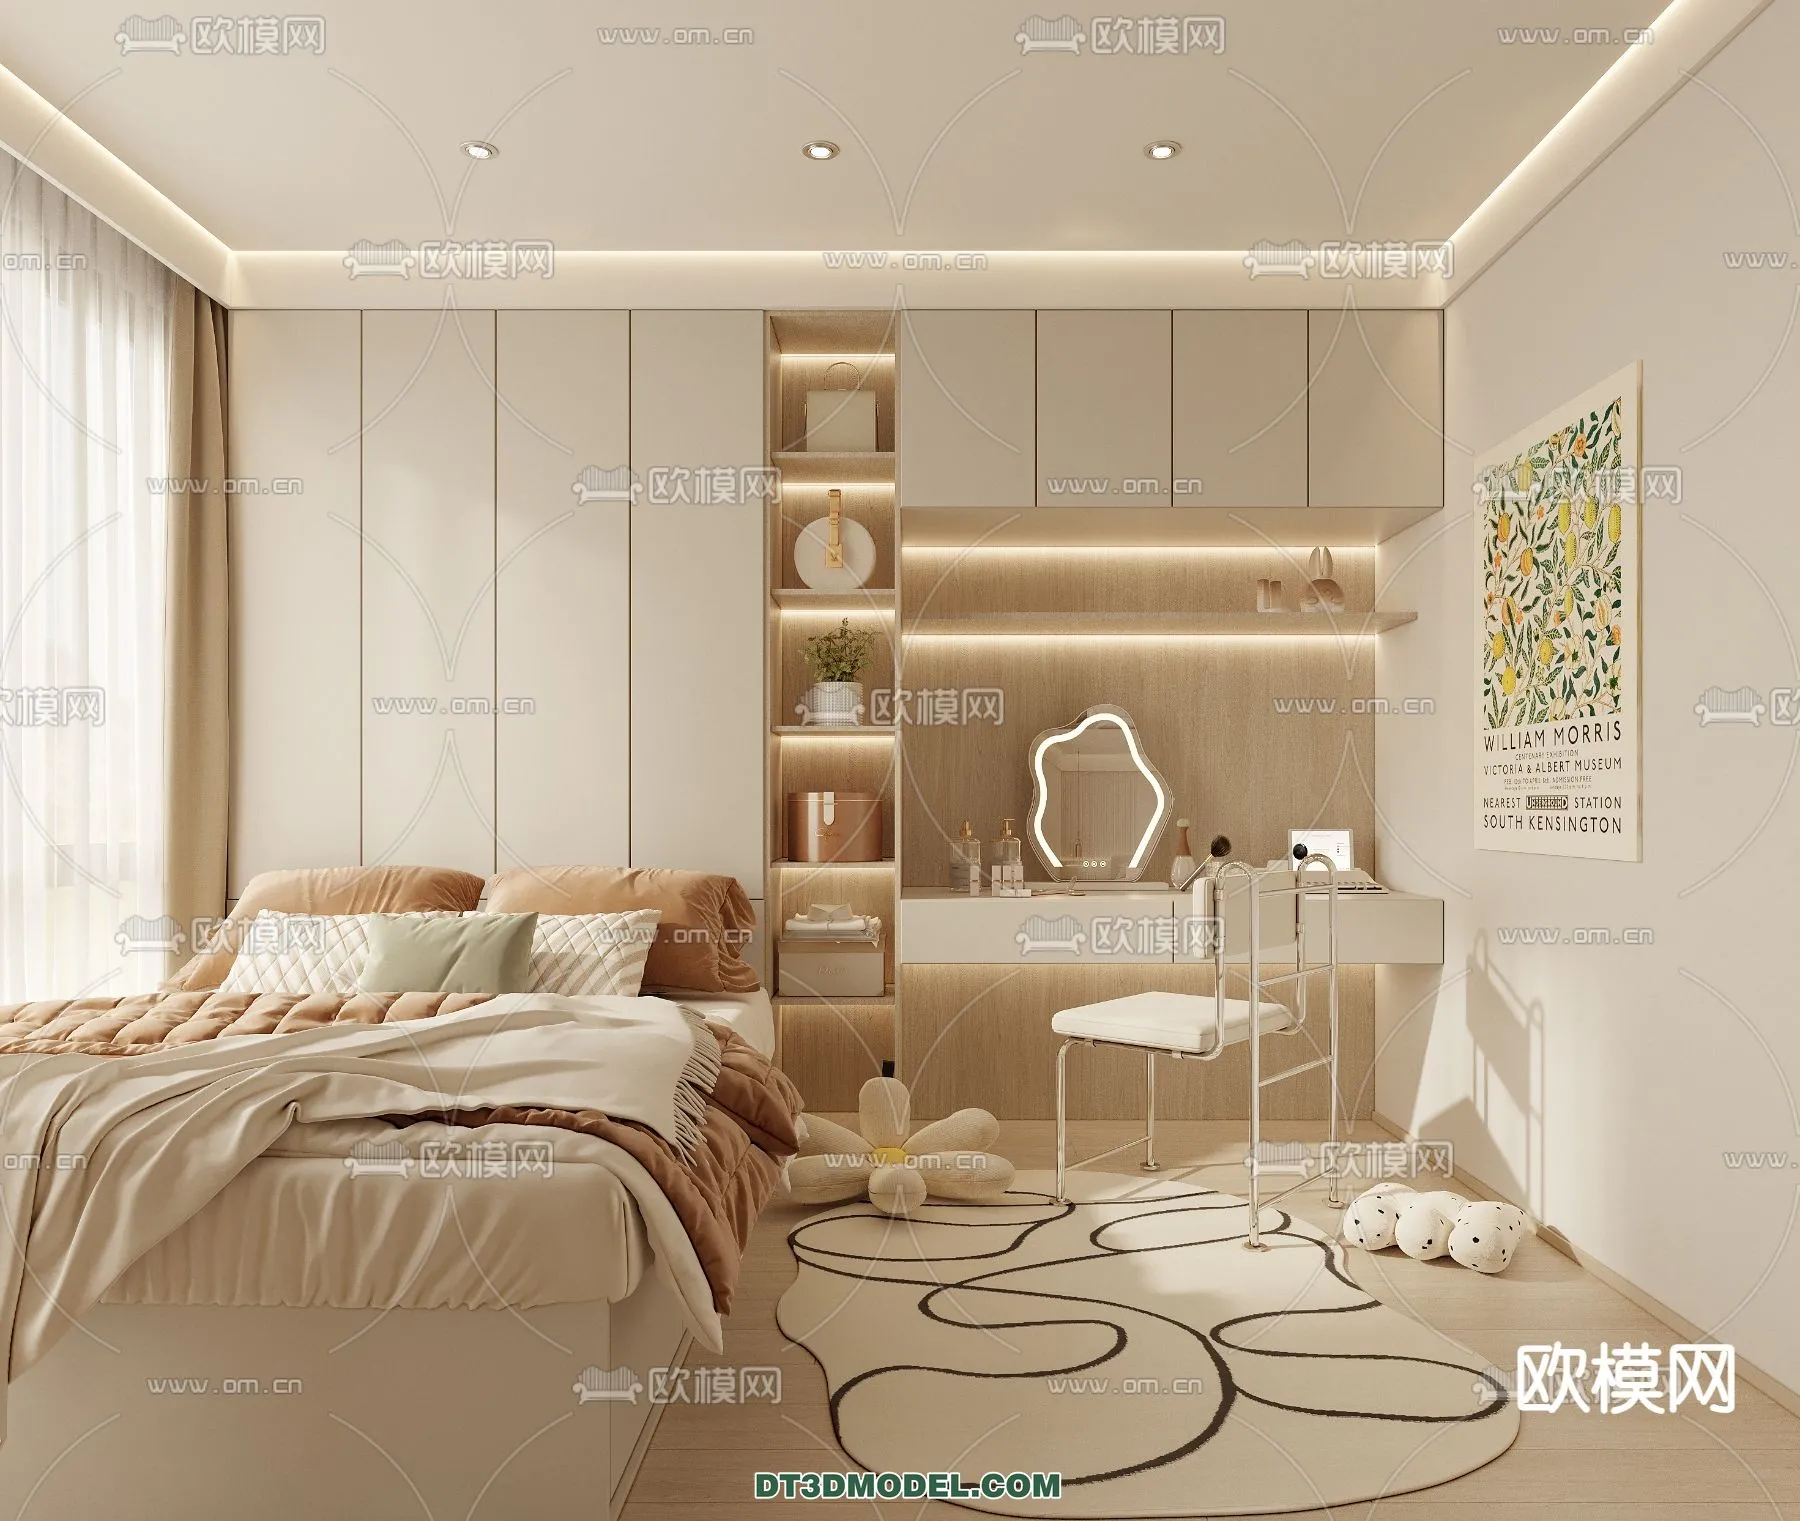 Tatami Bedroom – Japan Bedroom – 3D Scene – 027